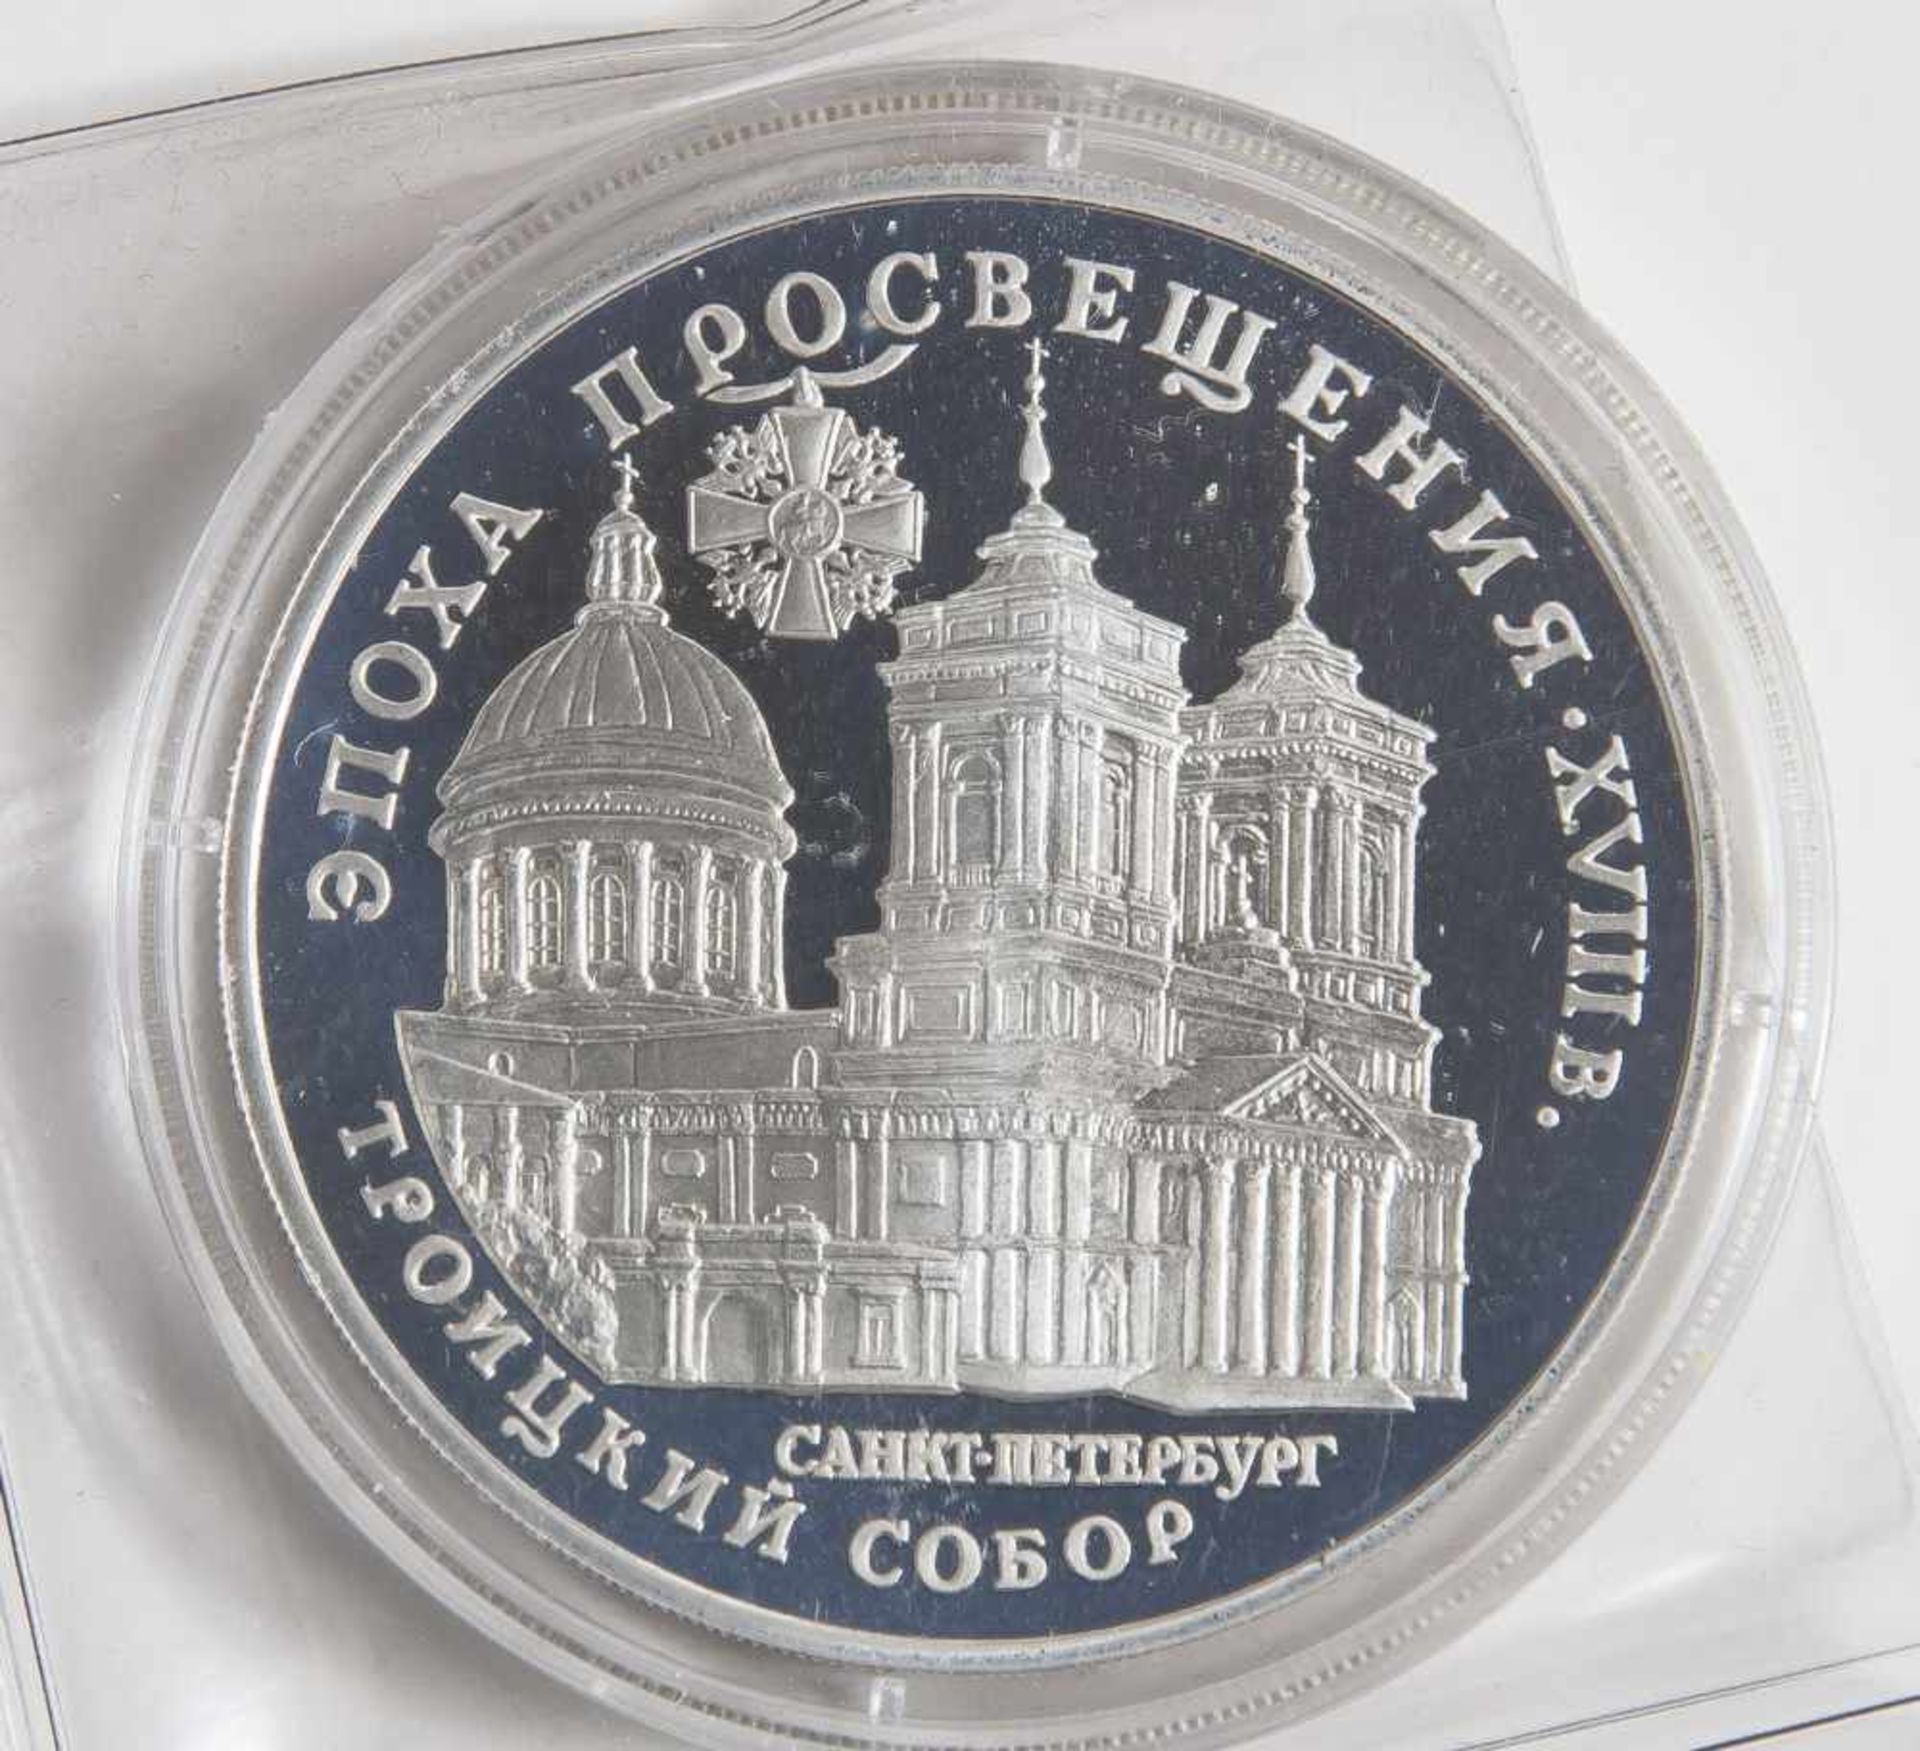 1 Münze, Russland, 3 Rubel, 1992, Dreifaltigkeitskathedrale St. Petersburg, Auflage 40000, Silber,